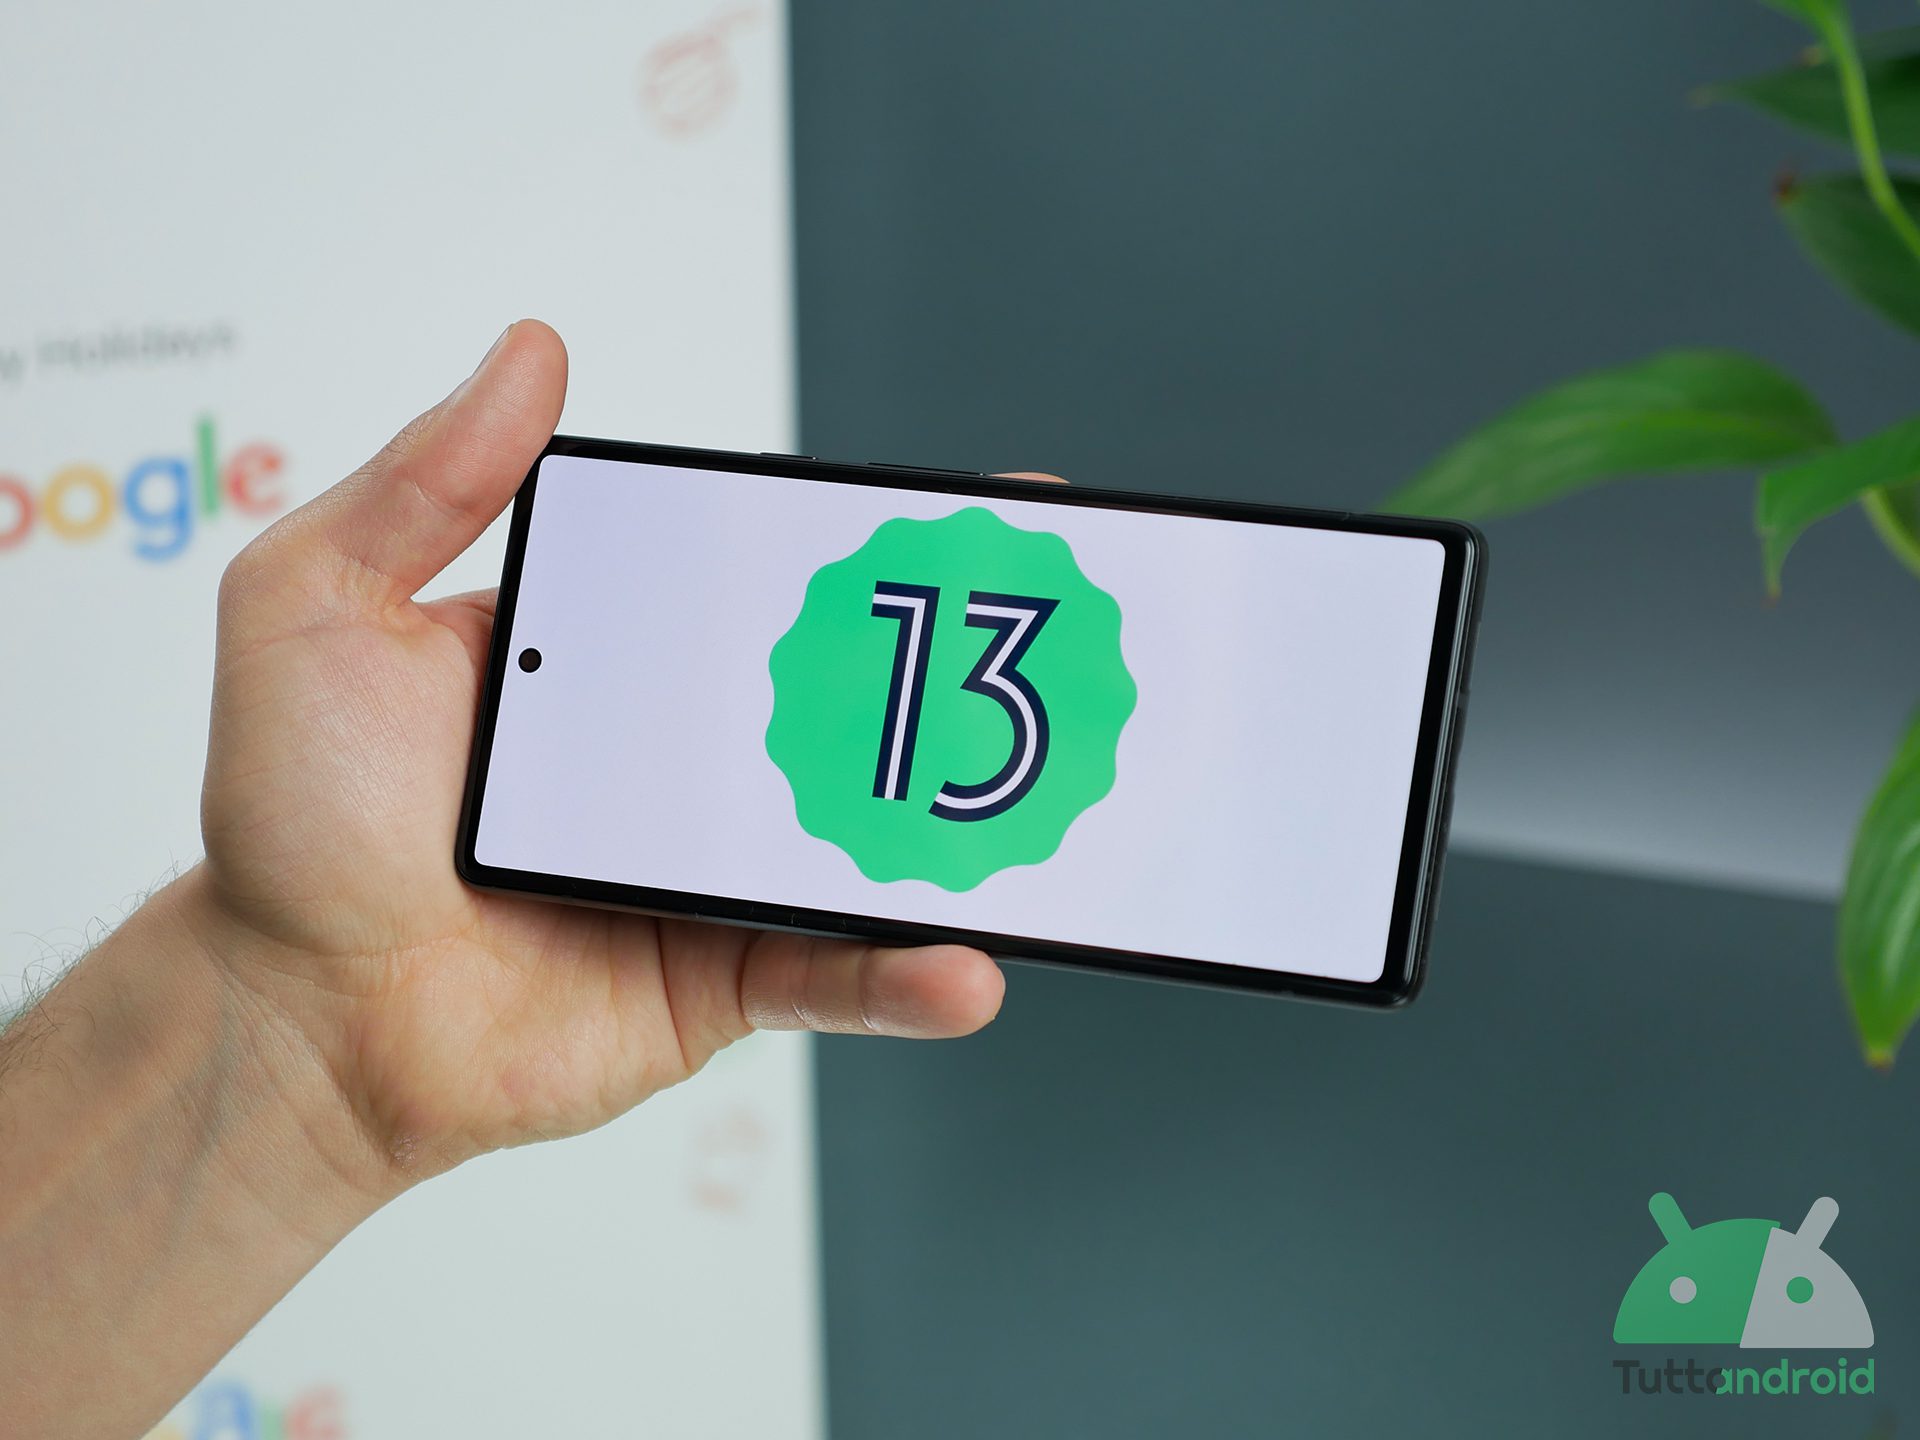 Android 13 tiramisu